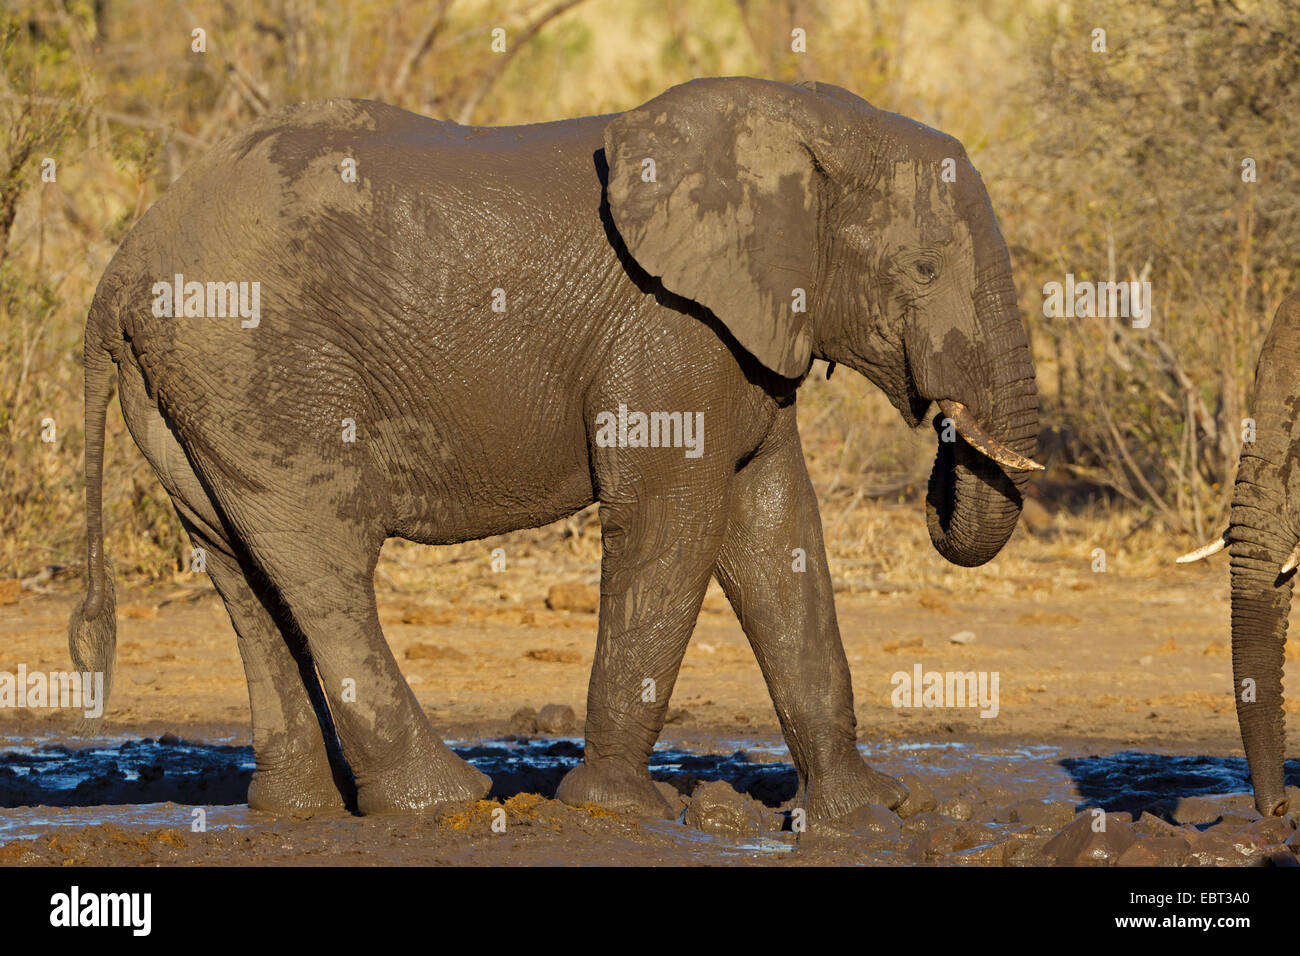 Elefante africano (Loxodonta africana), el elefante juvenil después del baño de barro, Sudáfrica, el Parque Nacional Krueger Foto de stock